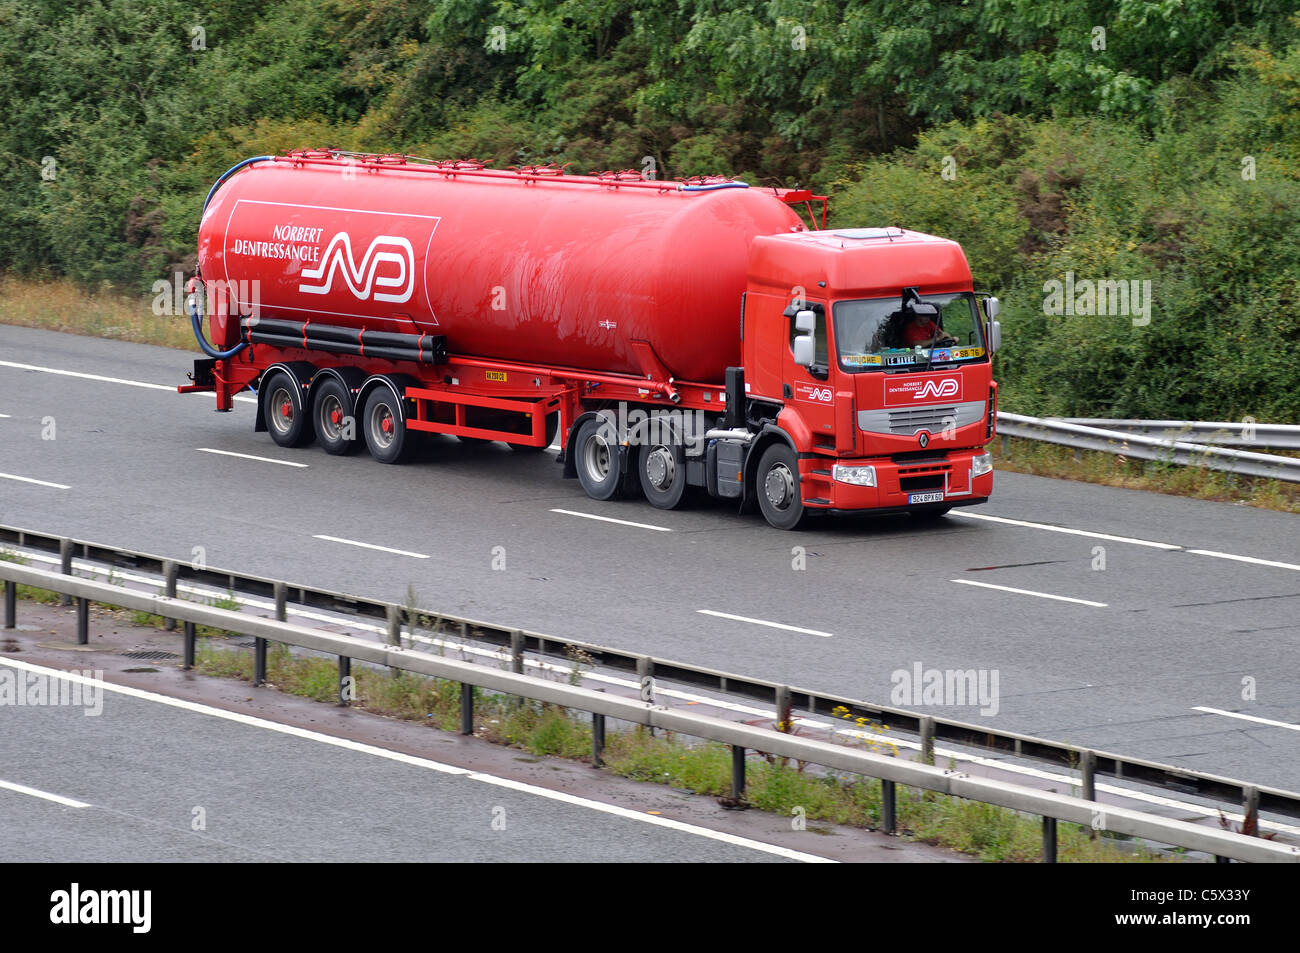 Norbert Dentressangle tanker on M40 motorway, Warwickshire, UK Stock Photo